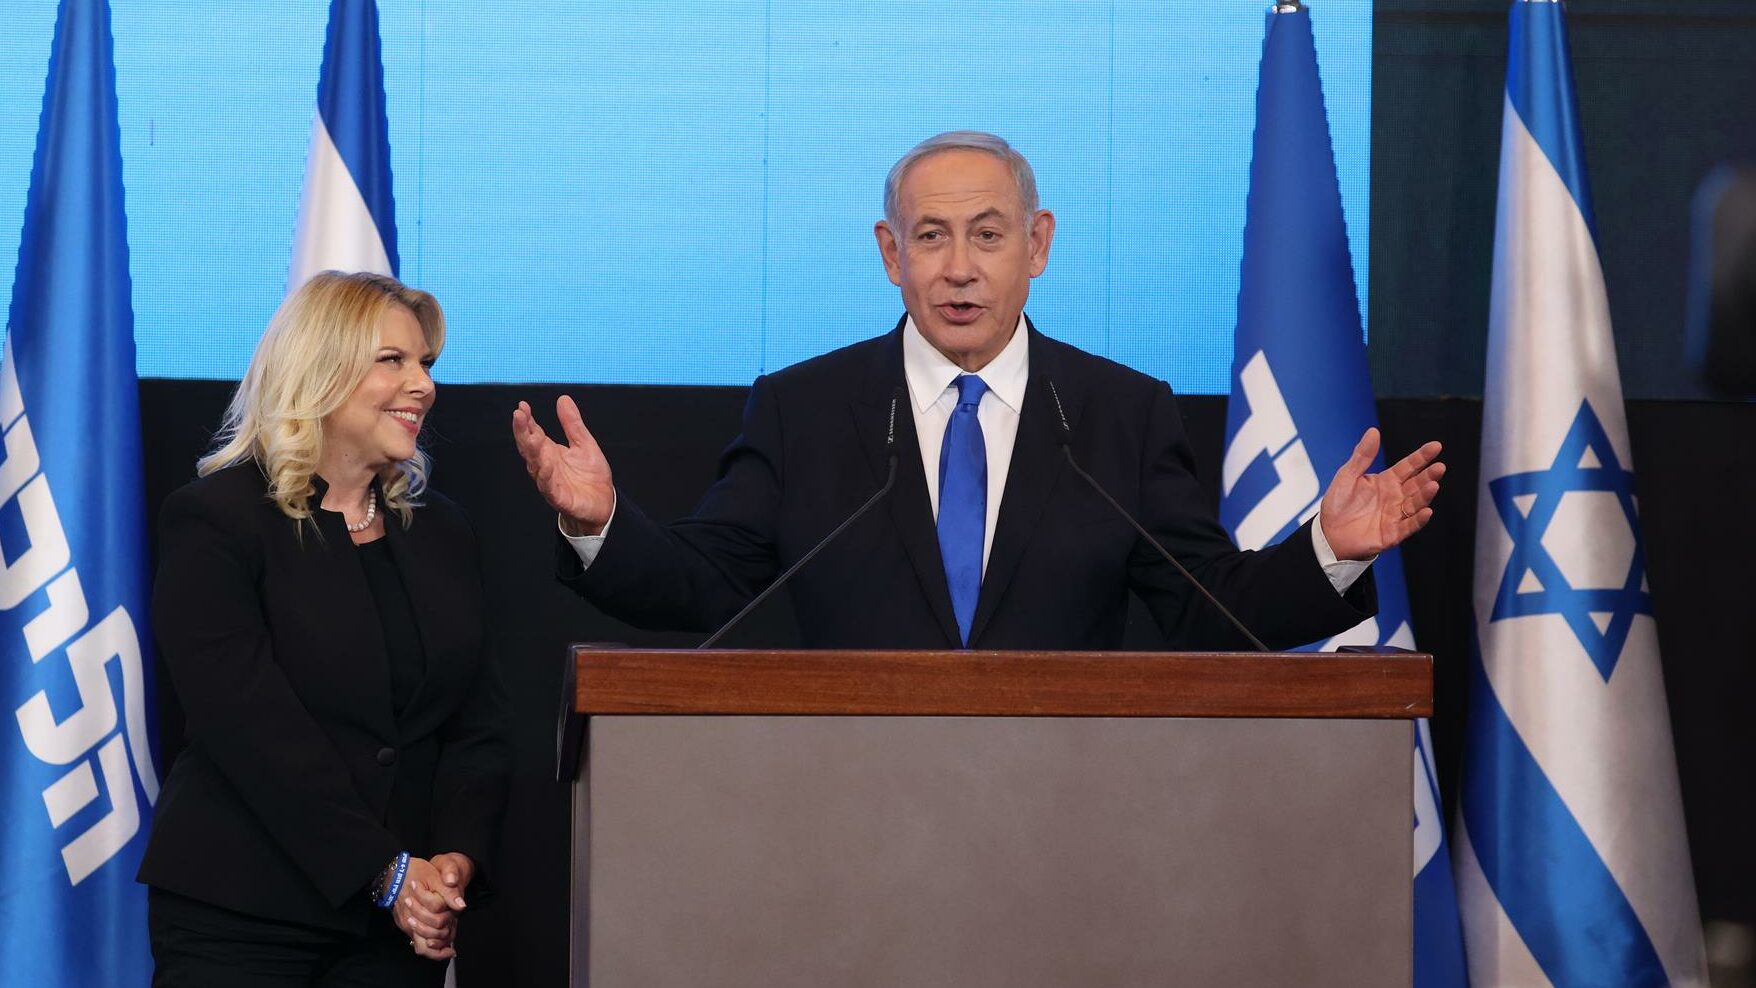 El ex primer ministro israelí y líder del partido Likud, Benjamin Netanyahu (der.), habla mientras su esposa Sara (izq.) observa el evento electoral final del partido Likud en Jerusalén.